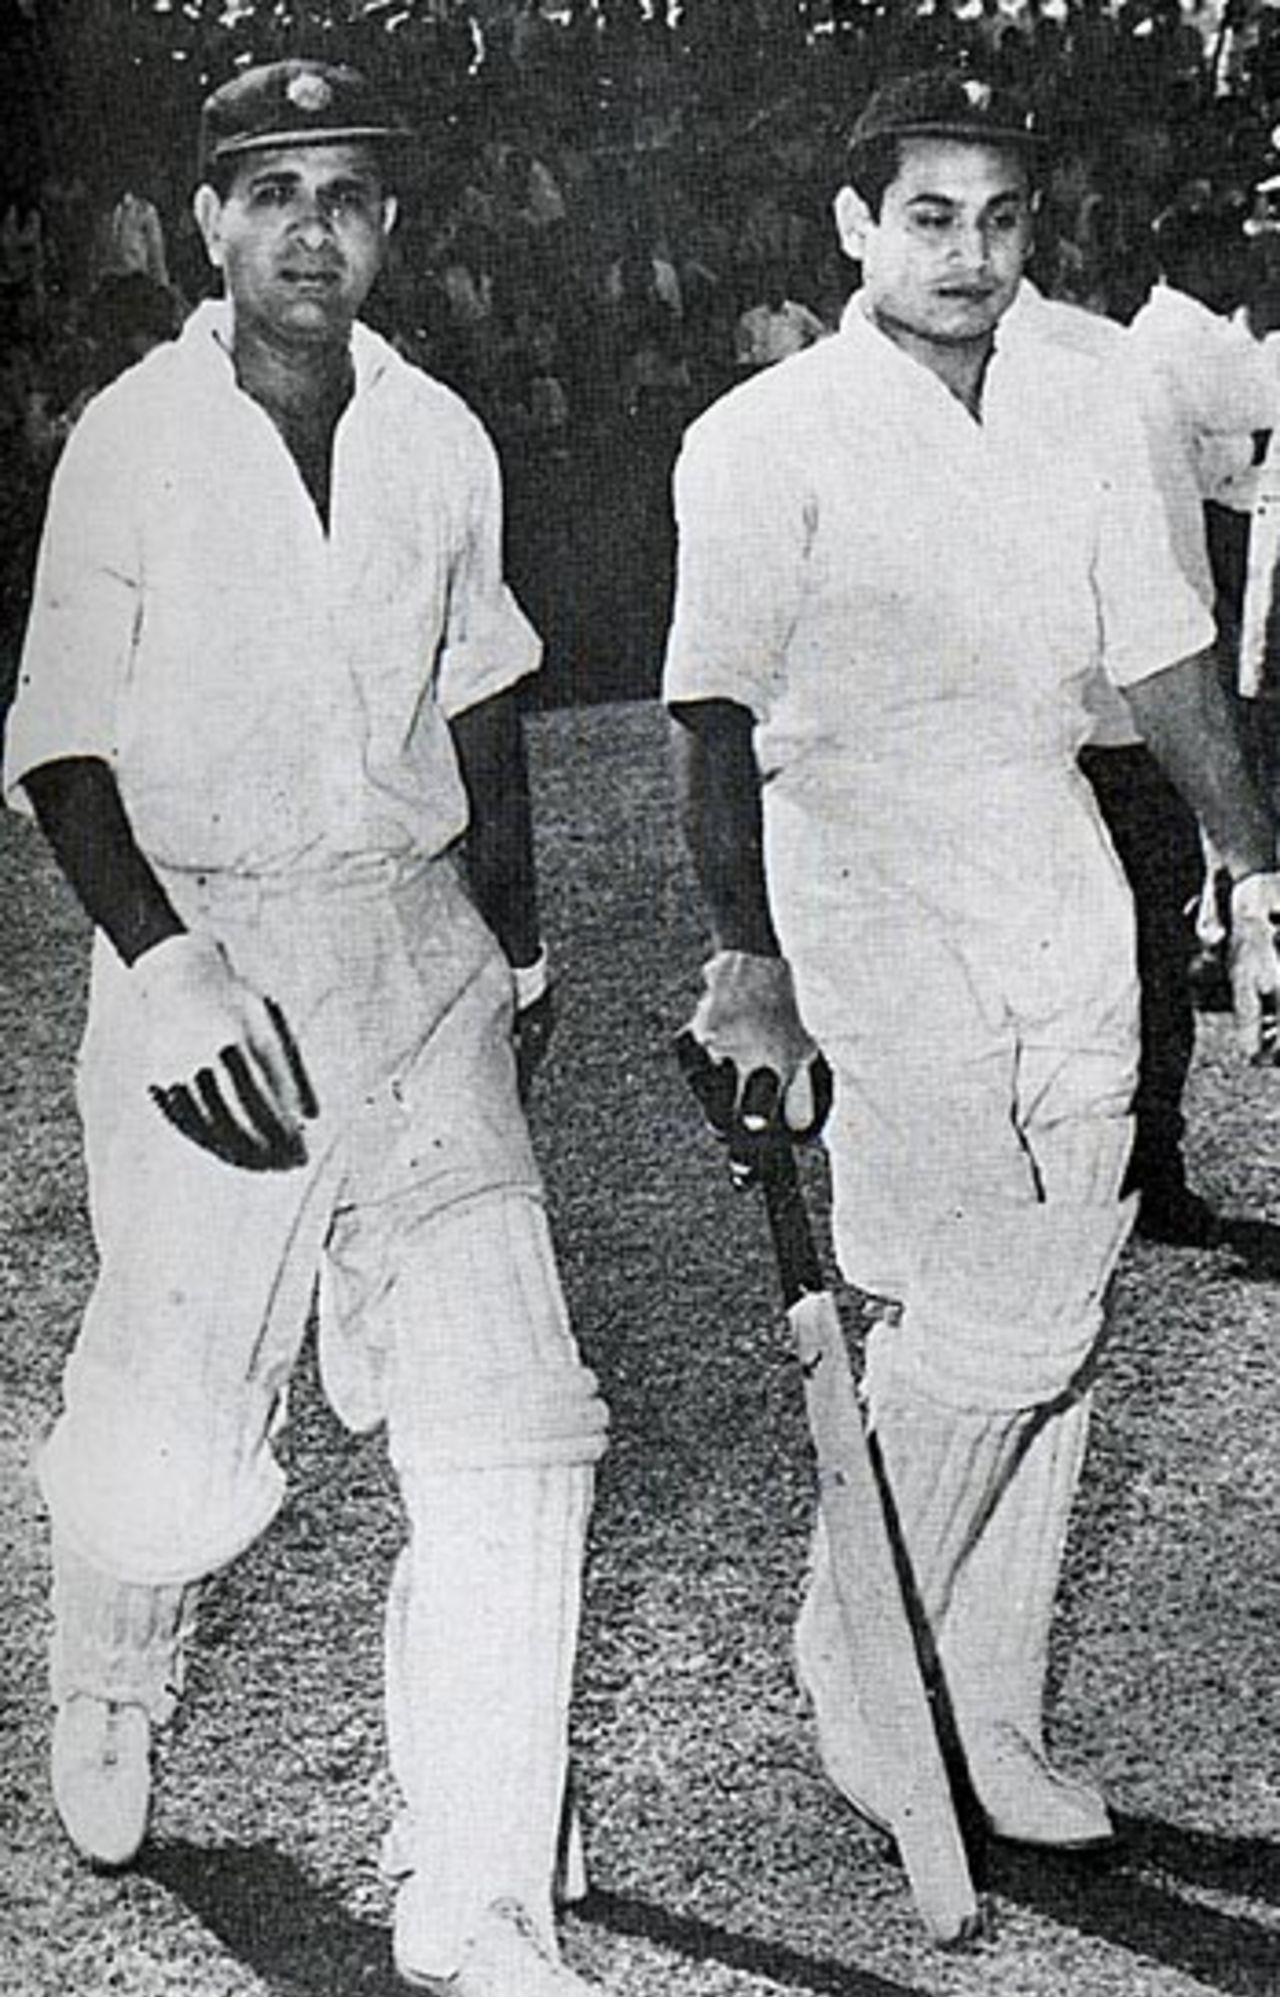 Pankaj Roy and Vinoo Mankad resume their record partnership, India v New Zealand, 5th Test, Madras, January 7, 1956